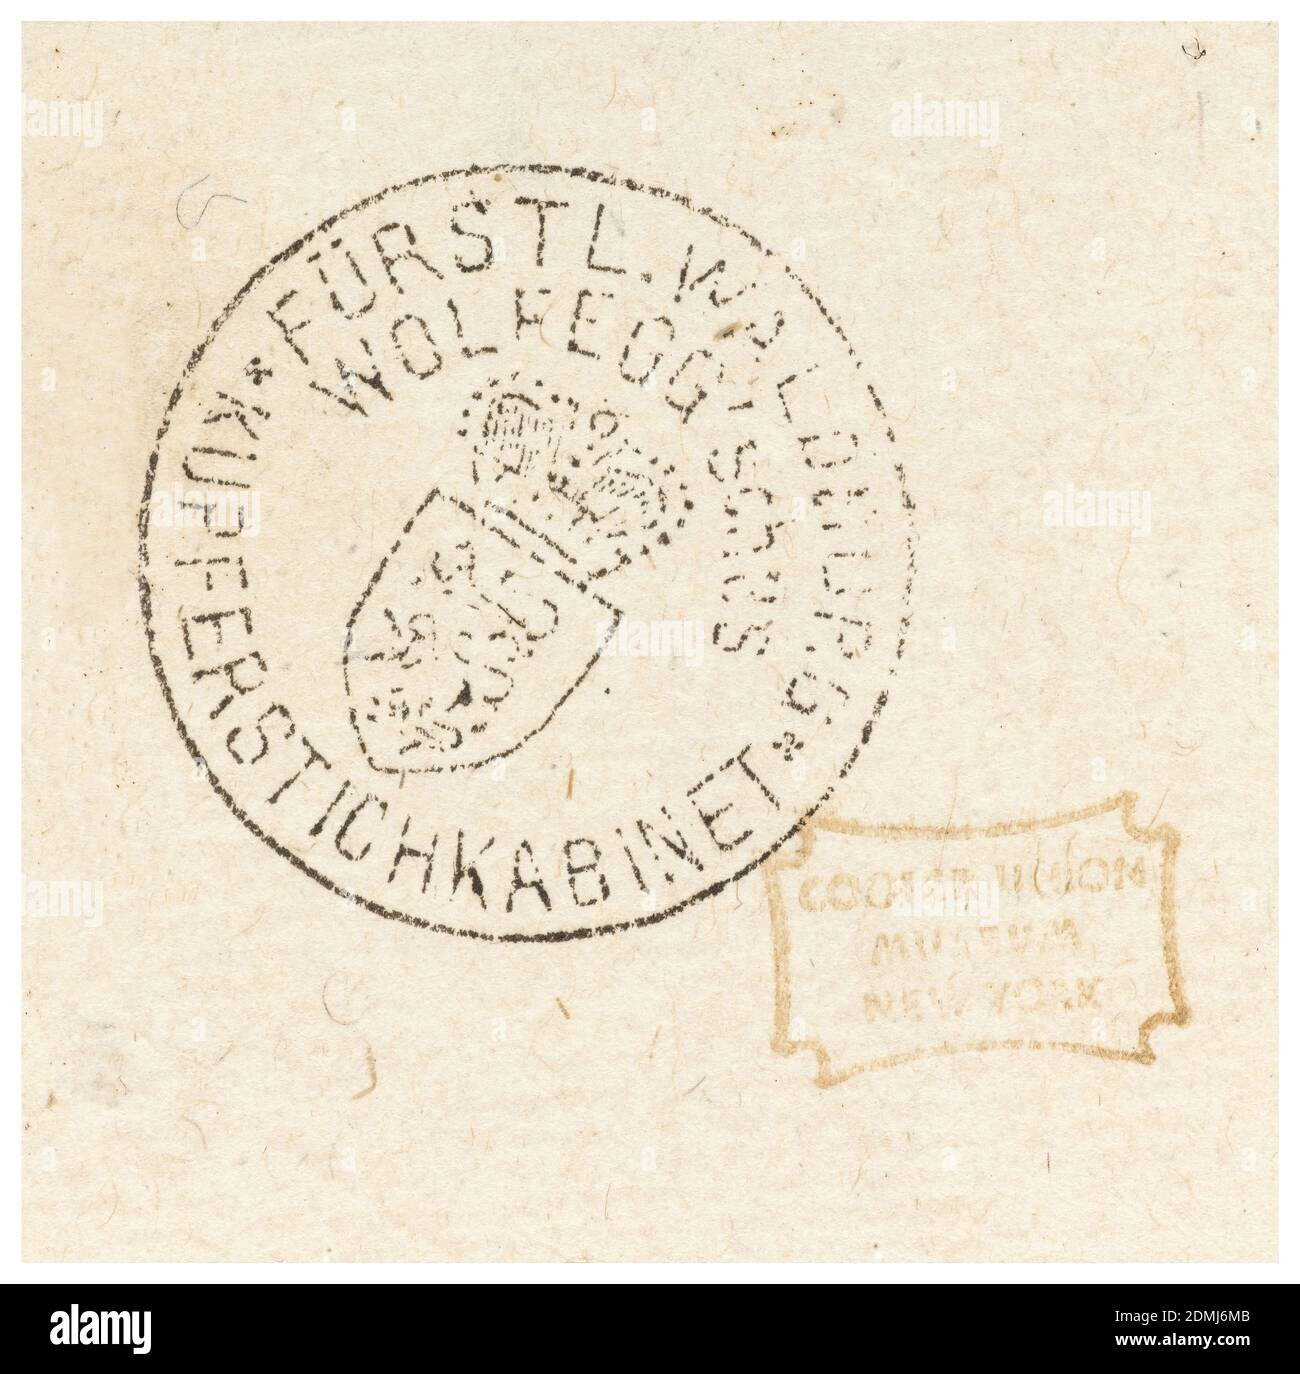 Plaque de 12 Stick Zum Verzaighnen Stechen Ver Fertigt (ensemble de douze  dessins pour les navires gravés), Bernhard Zan, Allemagne, active ca. 1580,  poinçon gravure, stylo et encre noire sur papier blanc